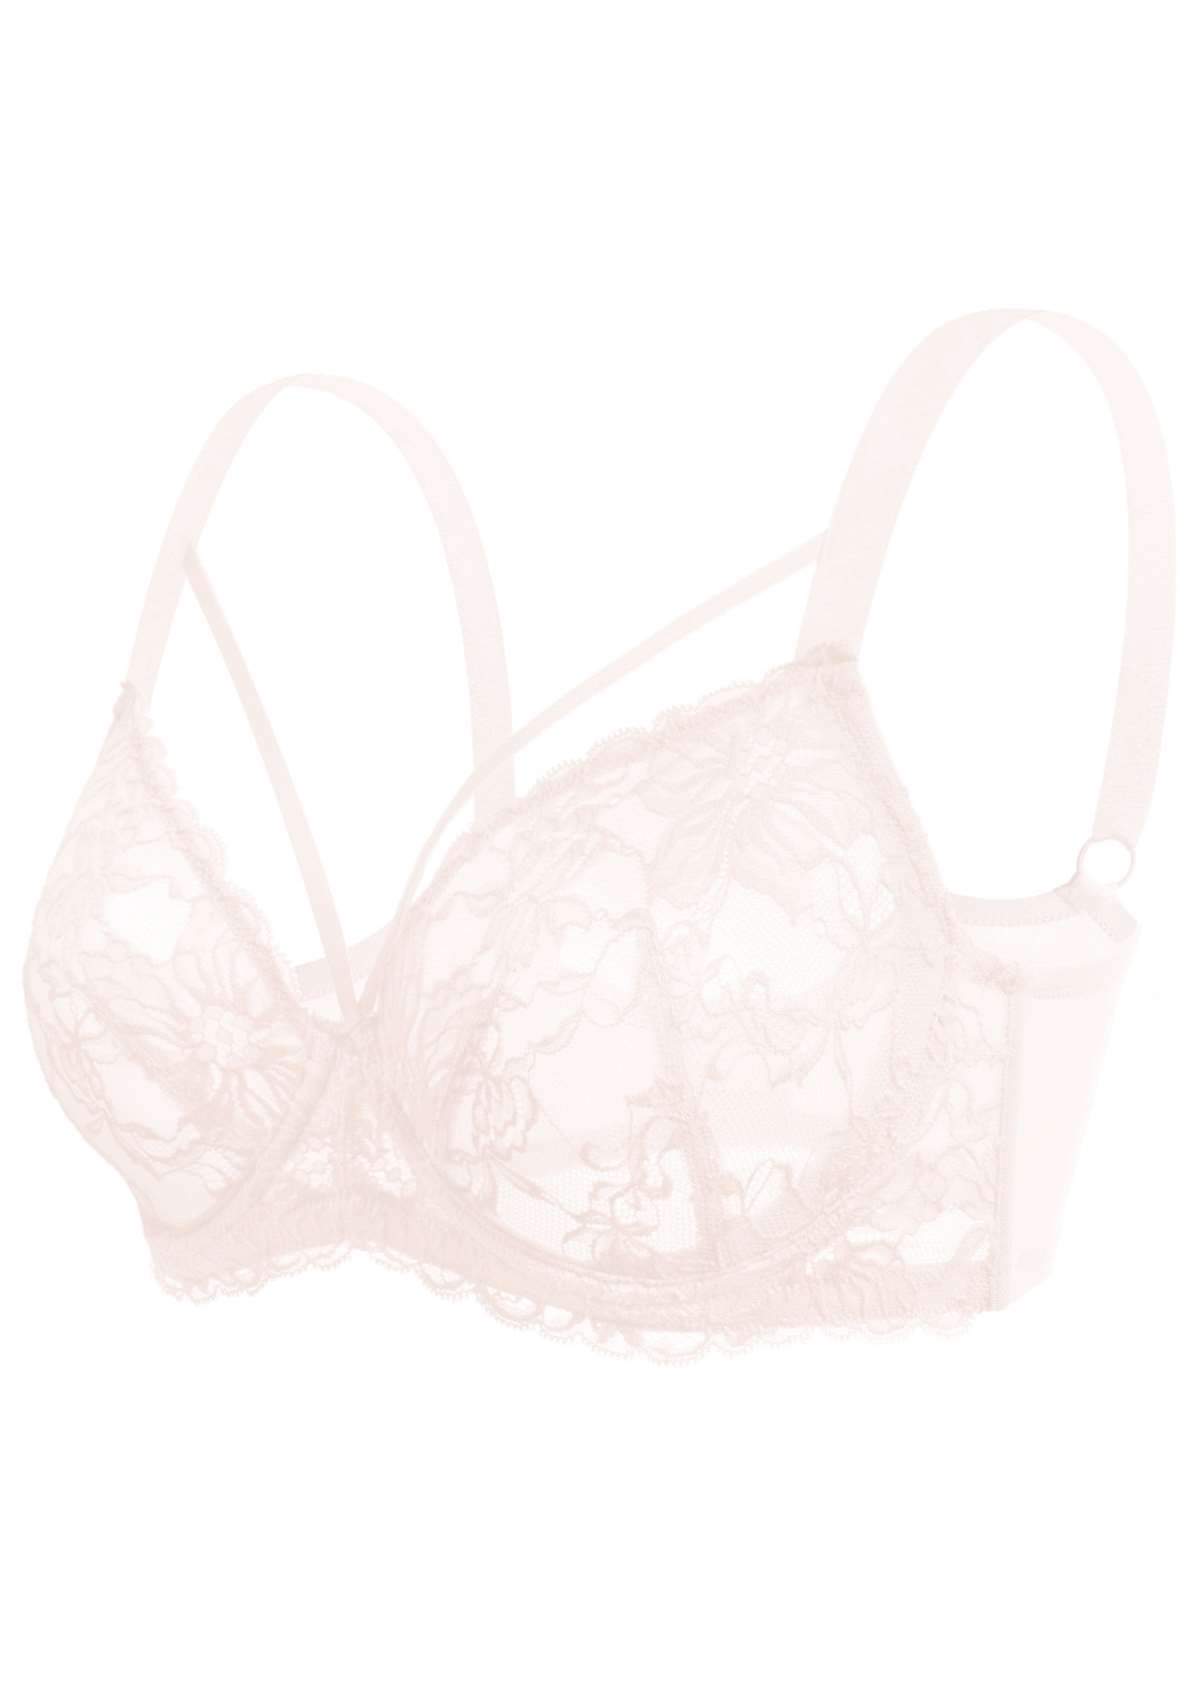 HSIA Pretty In Petals Underwire Lace Bra: No Padding, Full Cup Bra - Pink / 36 / DDD/F